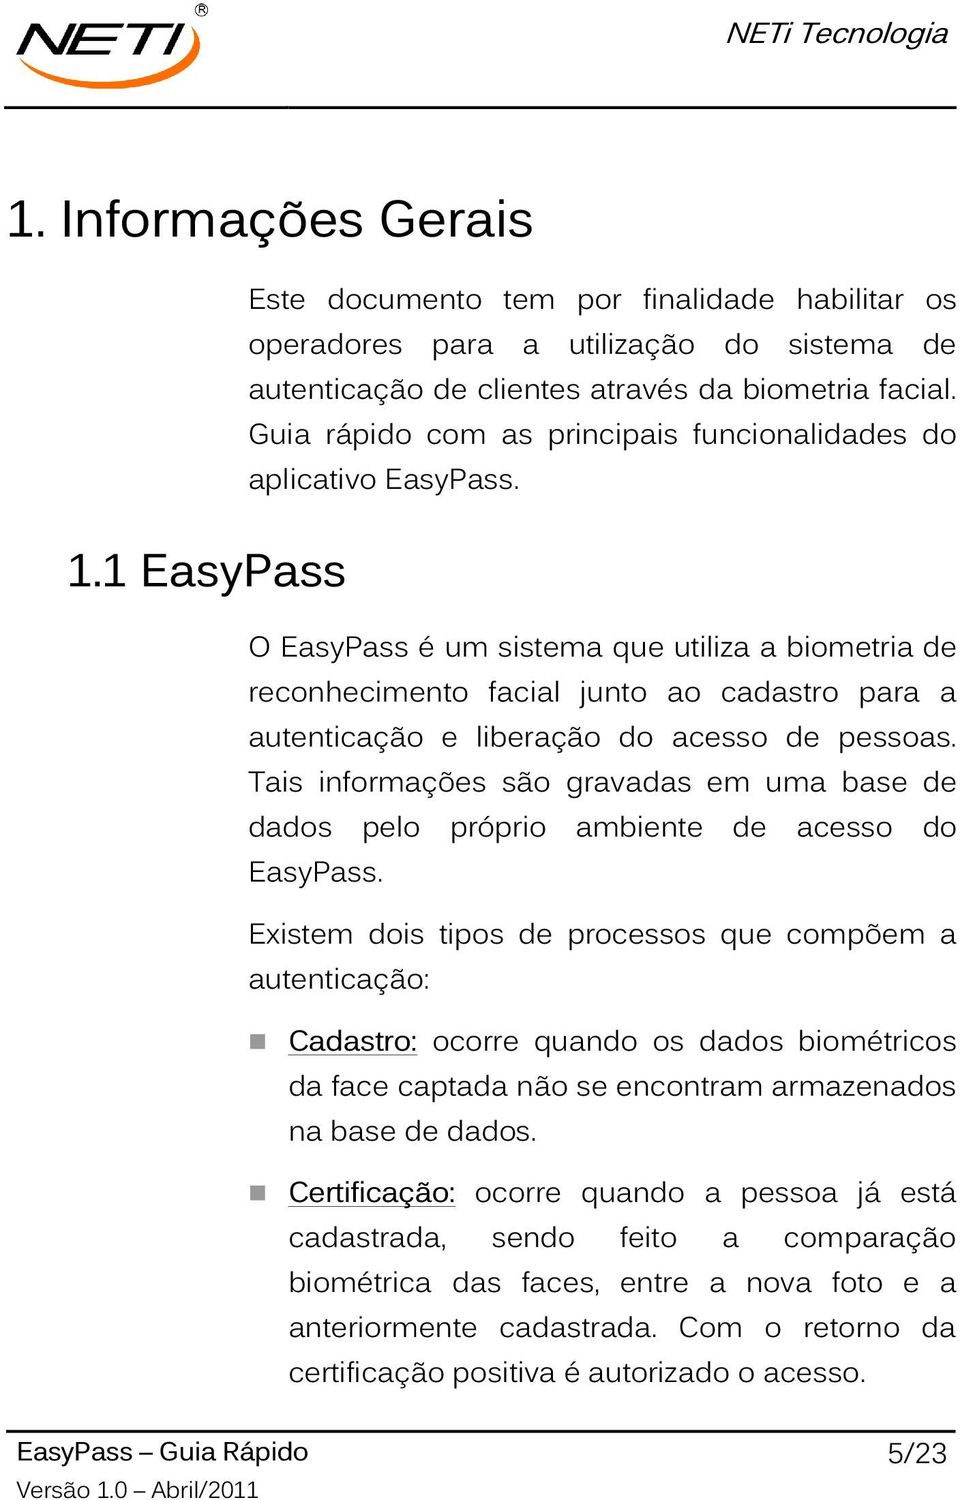 O EasyPass é um sistema que utiliza a biometria de reconhecimento facial junto ao cadastro para a autenticação e liberação do acesso de pessoas.